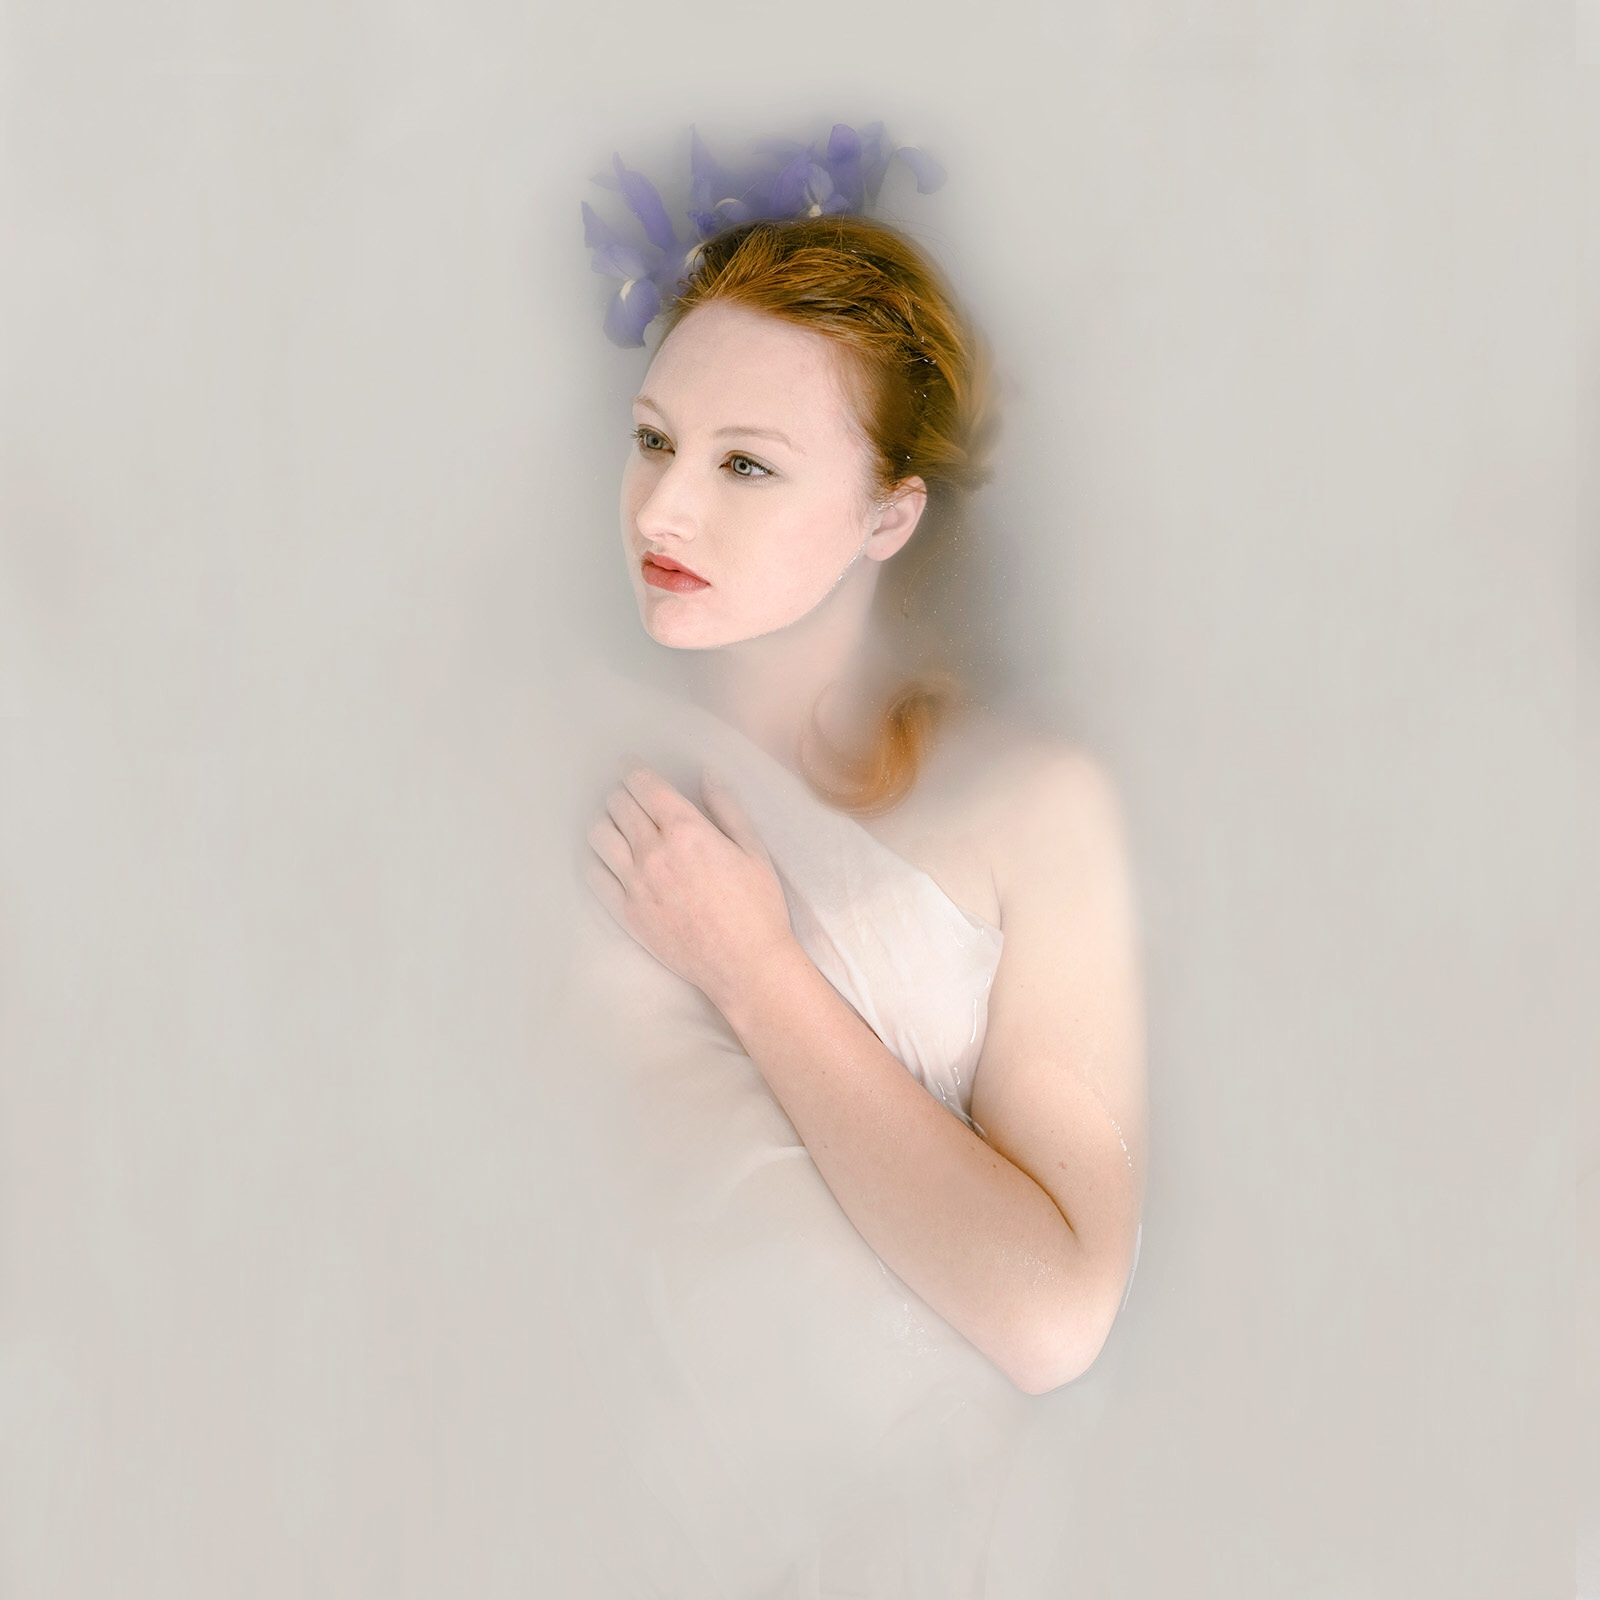 Goddess Milk Bath Portrait of Kelsey Johnson by Jaclyn Le